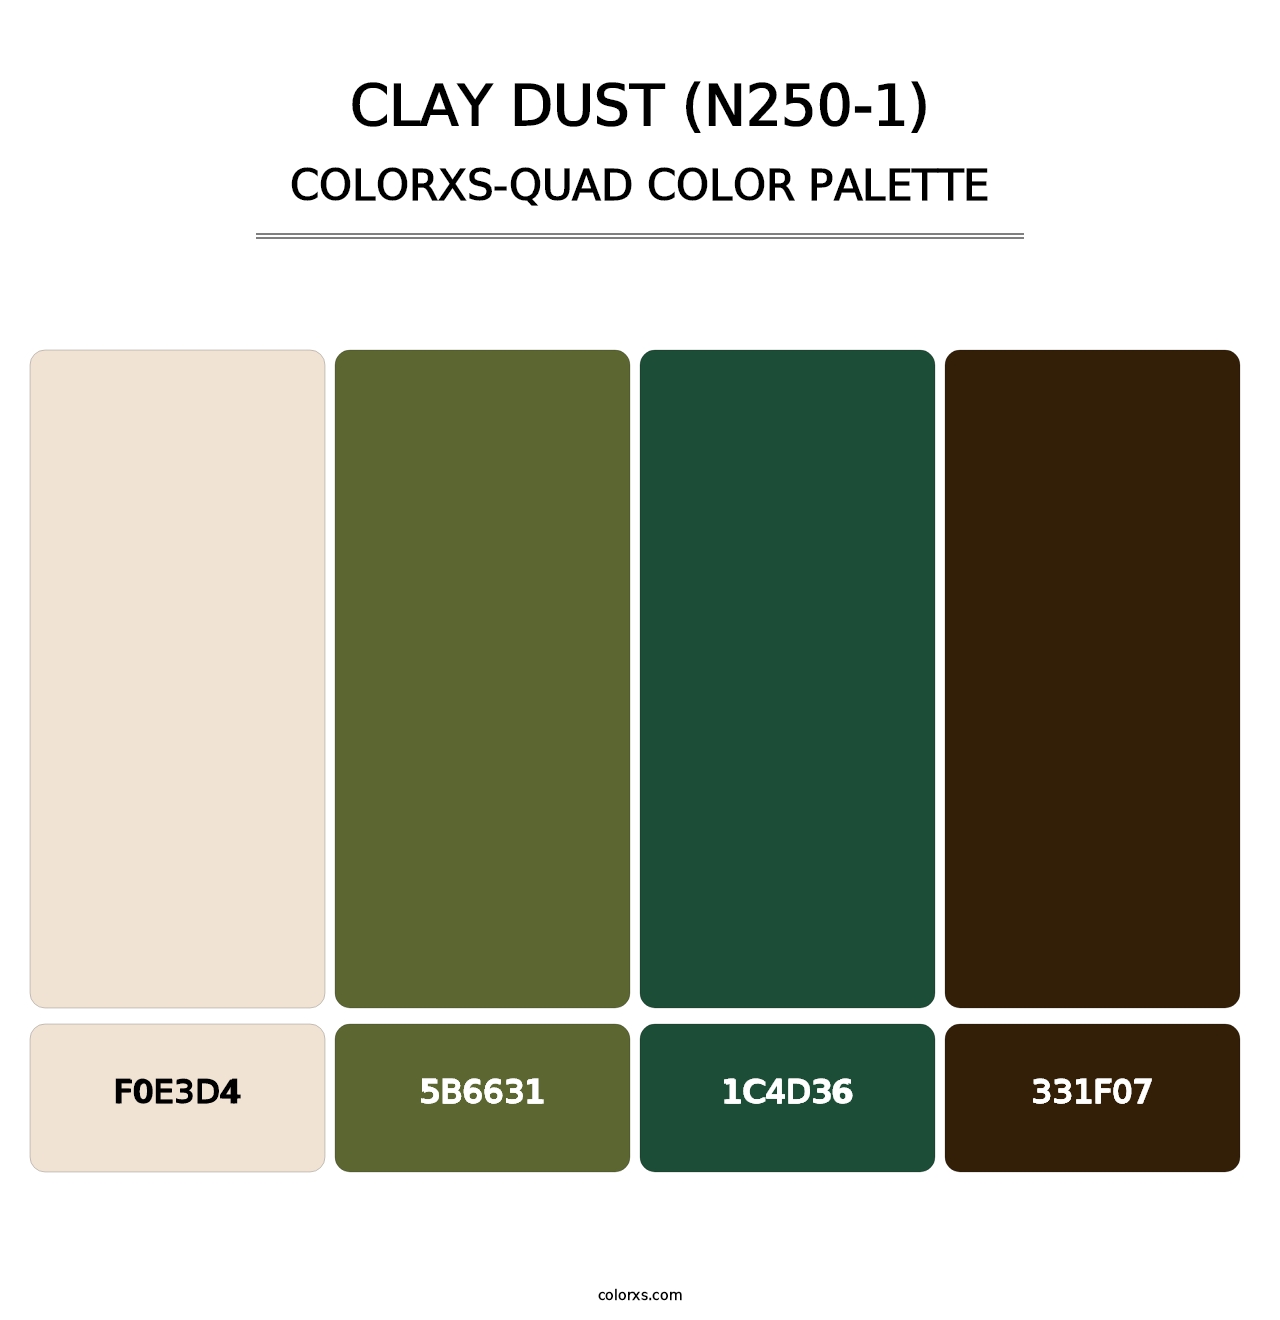 Clay Dust (N250-1) - Colorxs Quad Palette